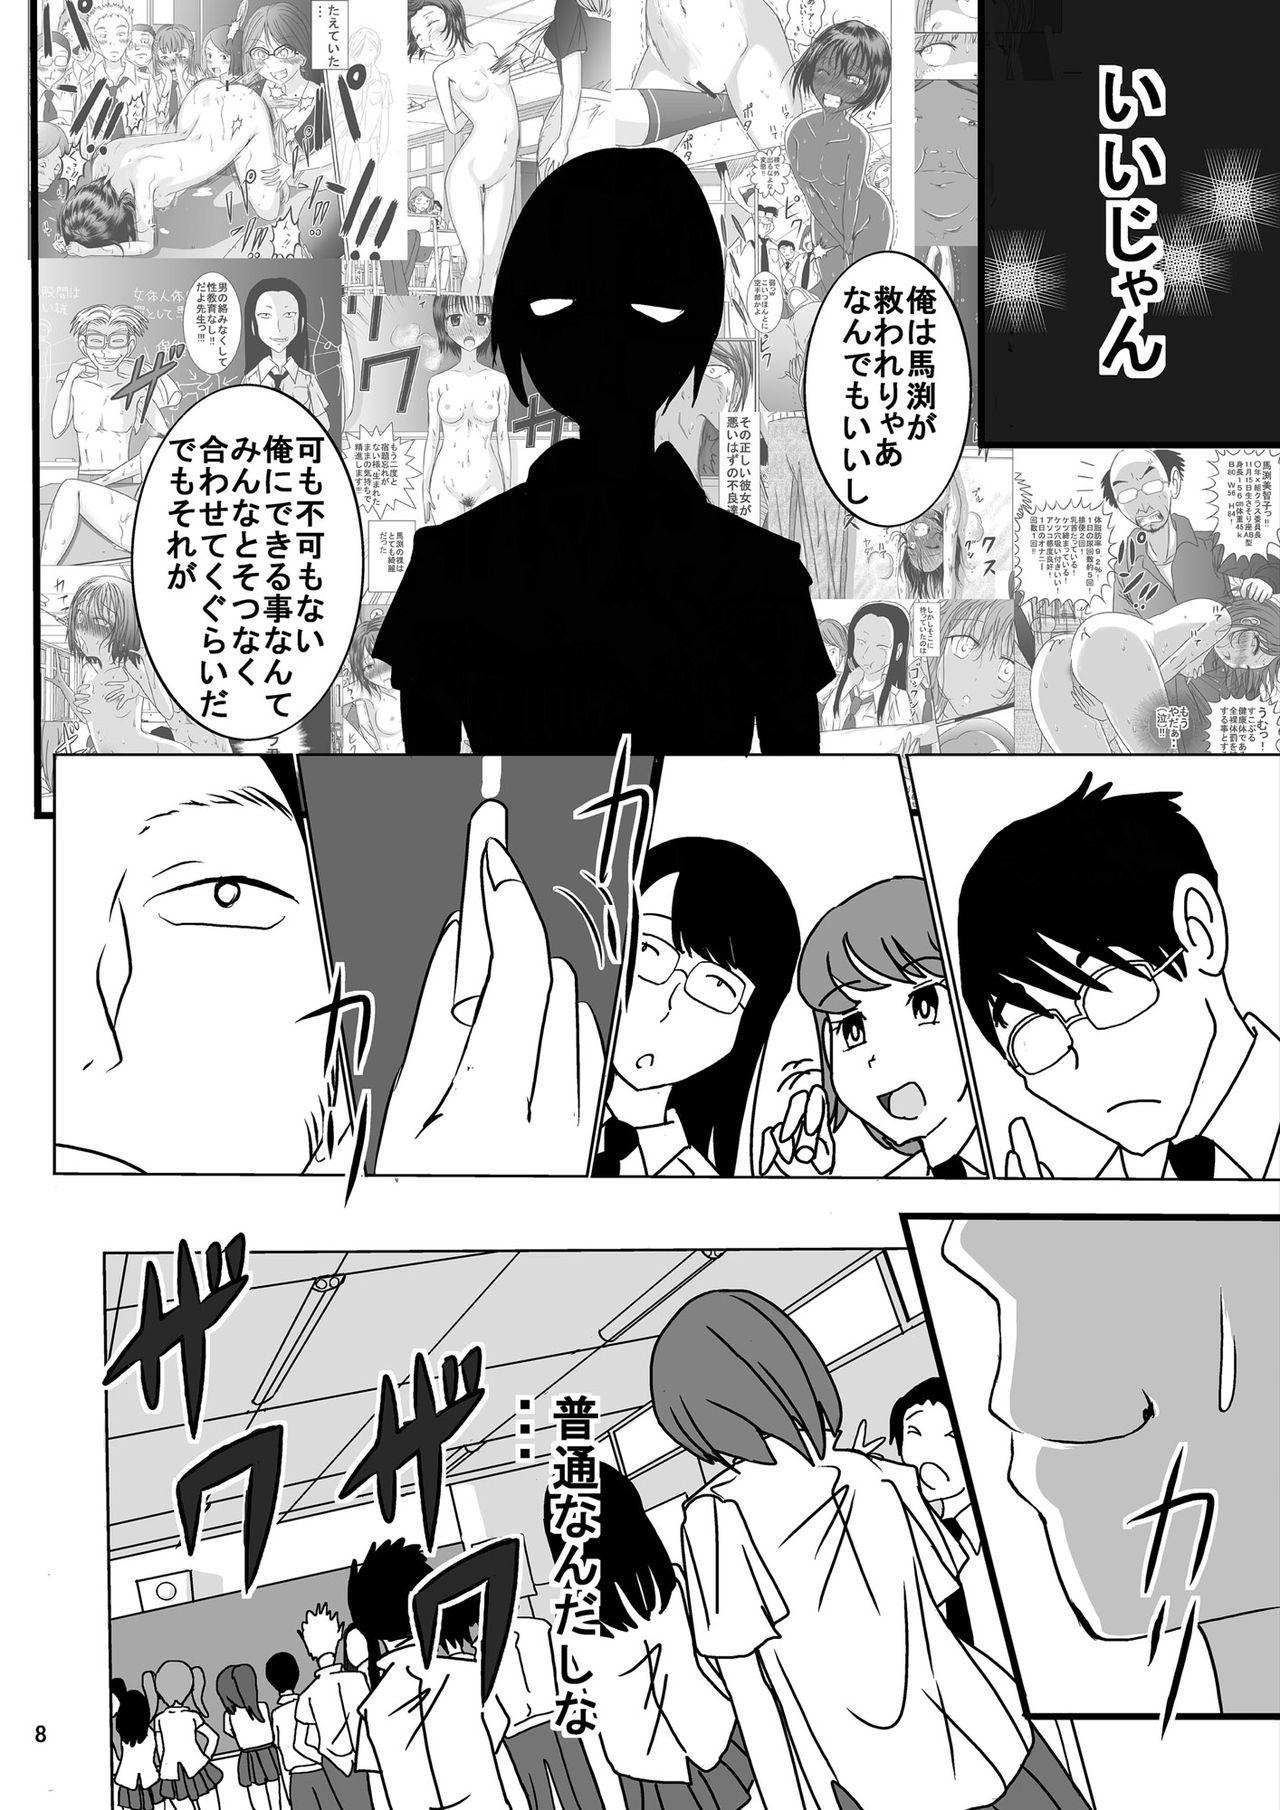 Dildo Fucking Shukudai Wasuremashitako-san e no Zenra Kyouiku 6 Secretary - Page 8